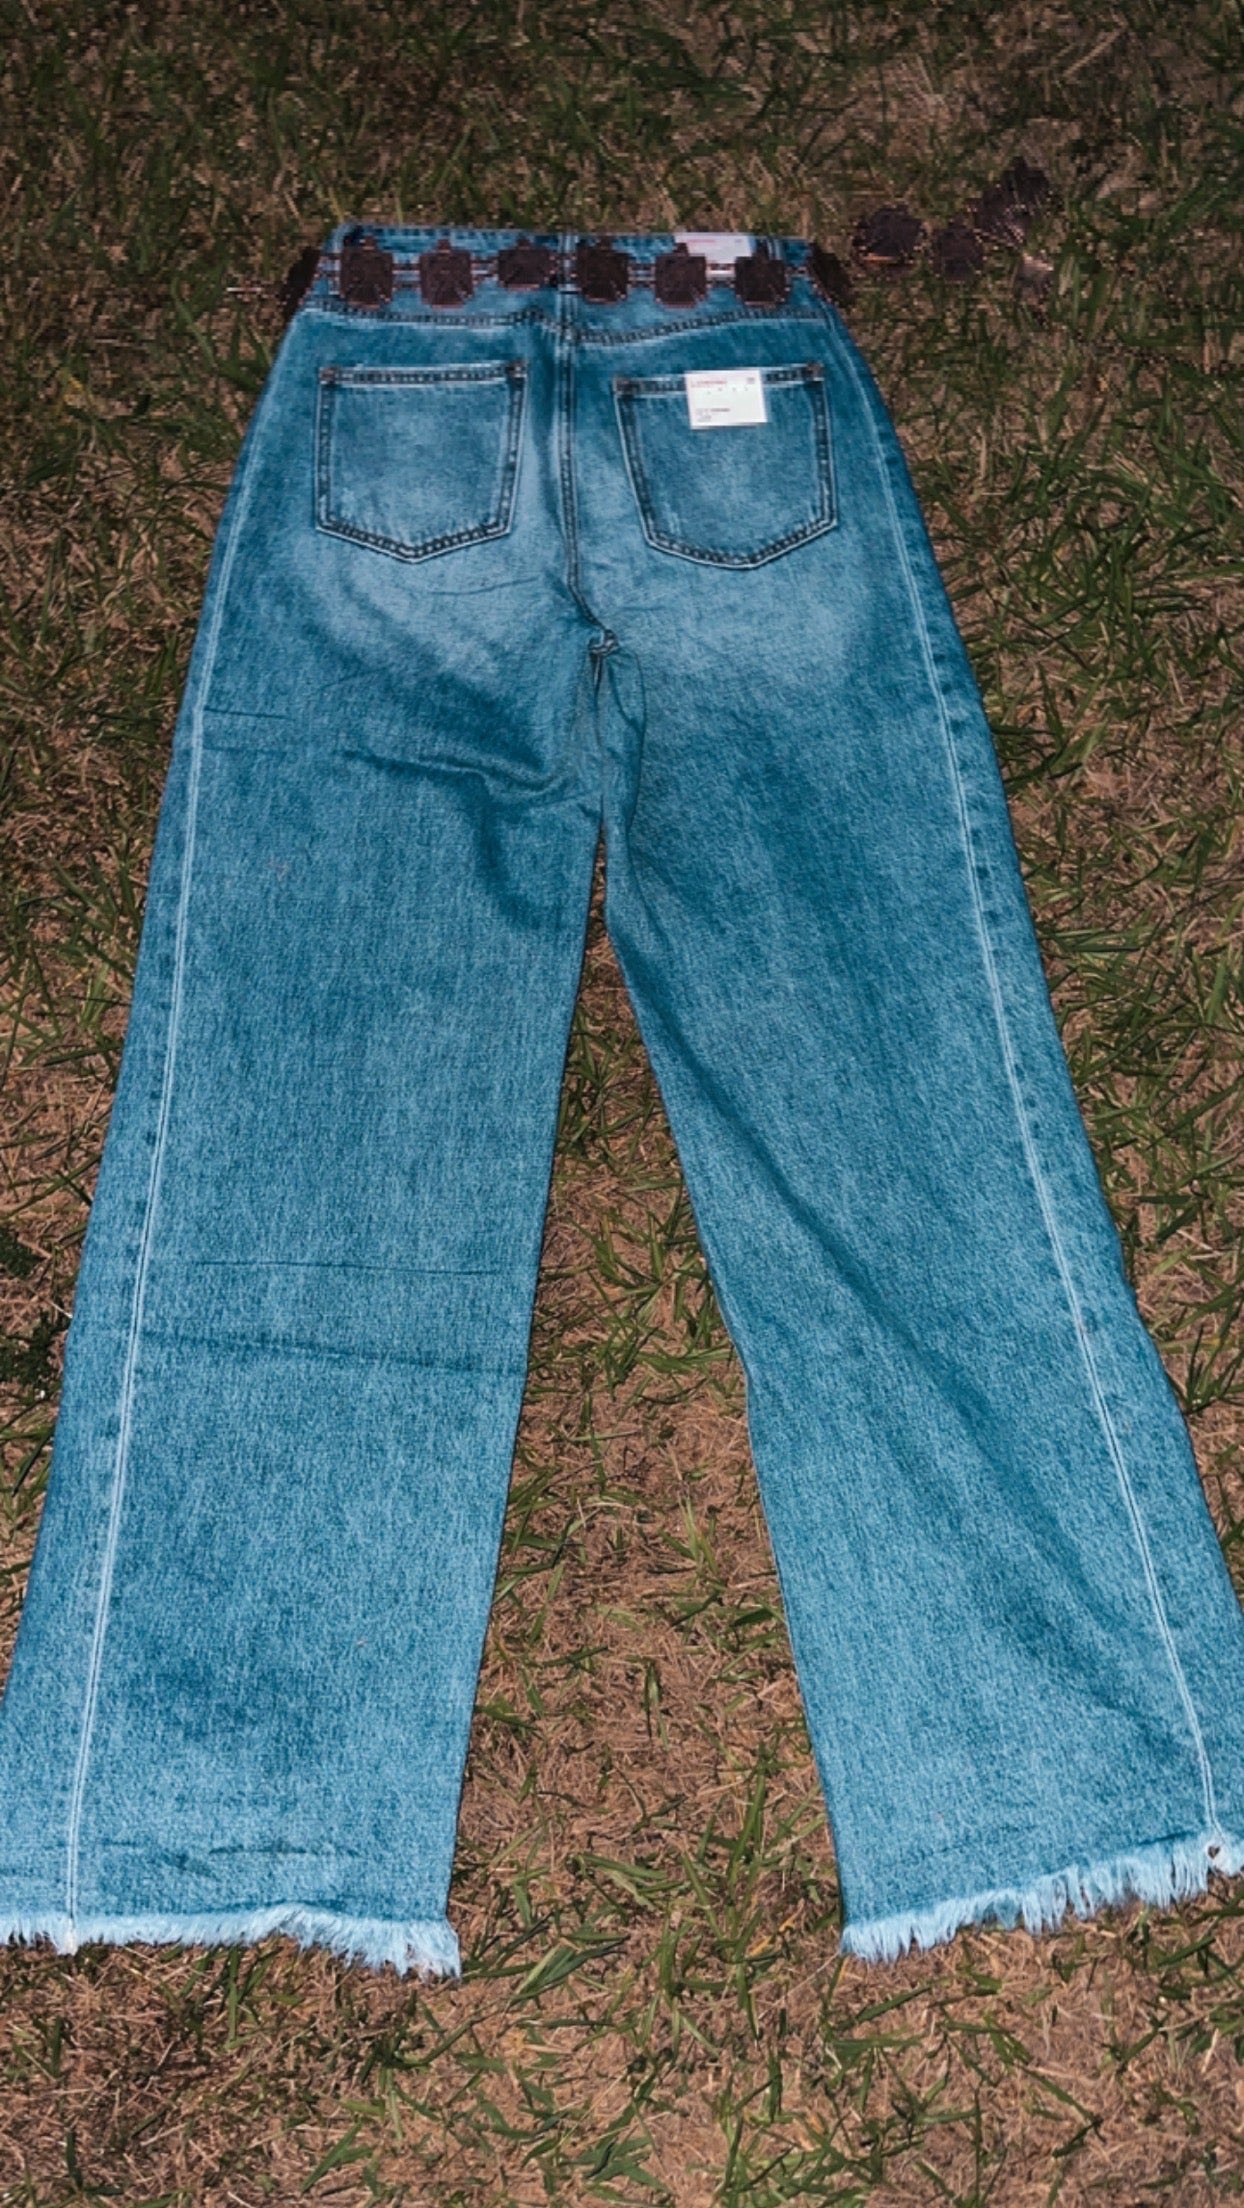 Vintage smoke show jeans